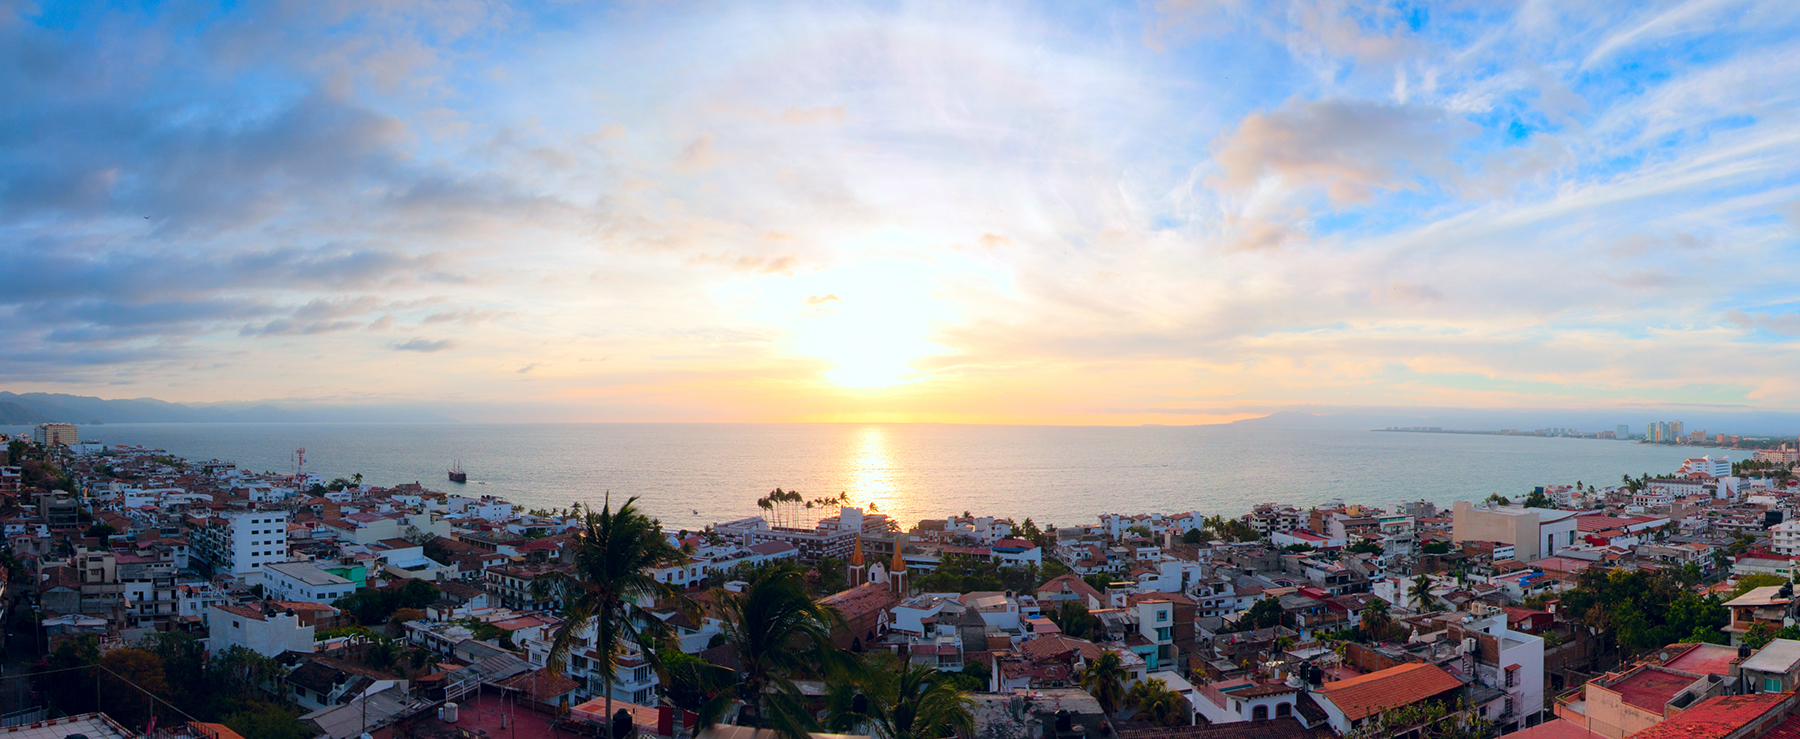 Enjoy the Sunset in Puerto Vallarta